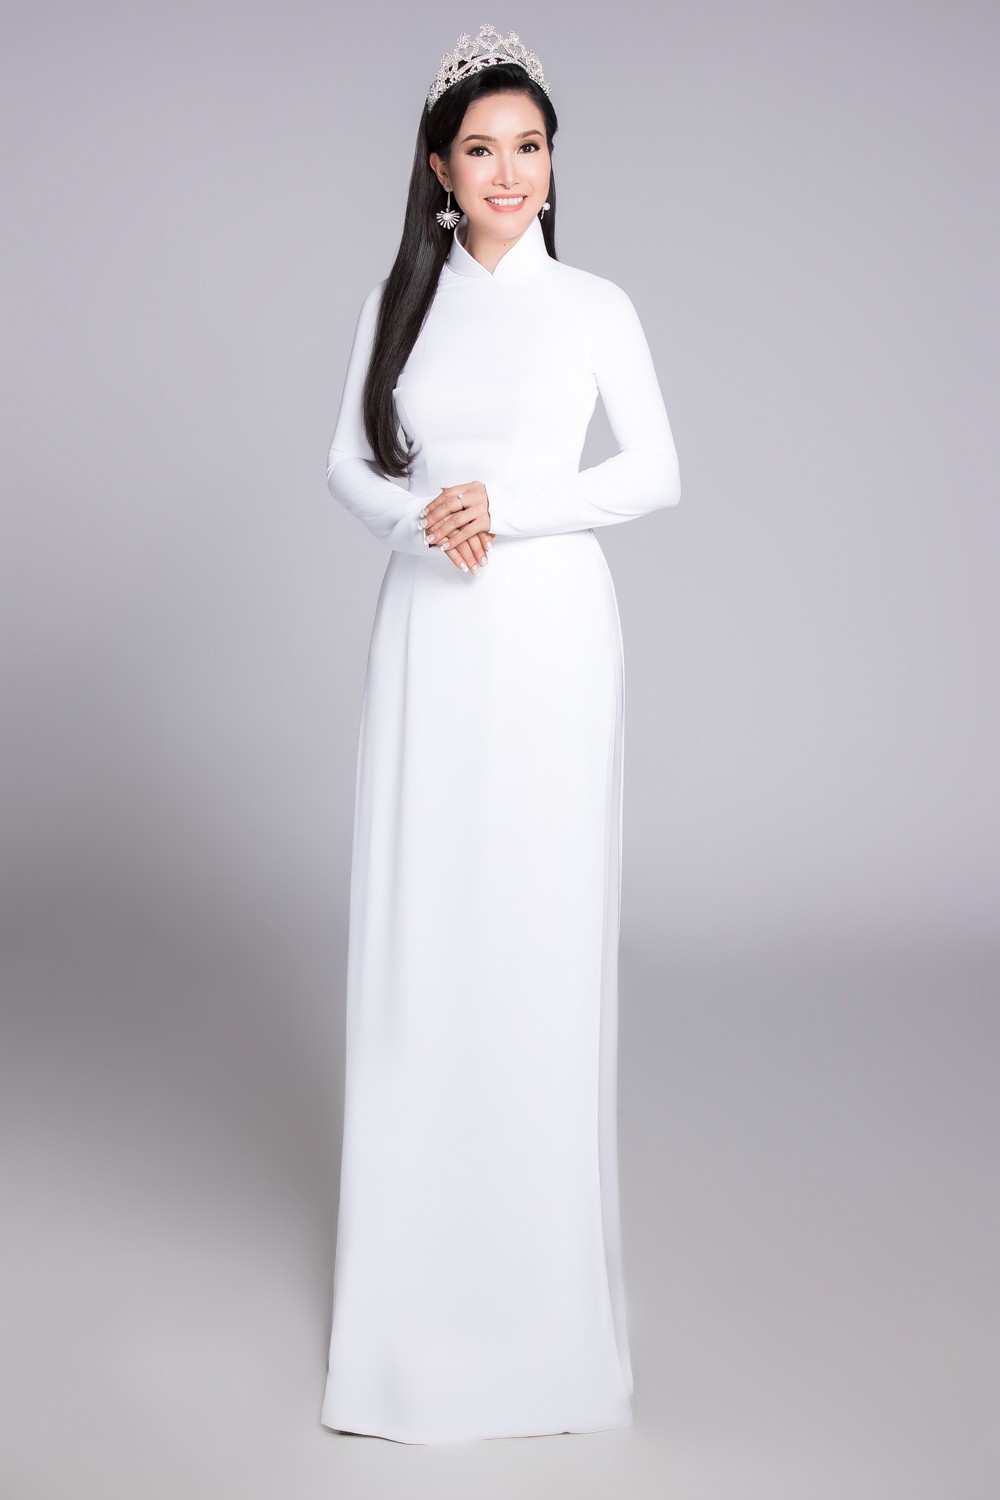 Không váy áo gợi cảm, Hoa hậu Kỳ Duyên, Đặng Thu Thảo lại gợi nhớ cả bầu trời thanh xuân khi diện áo dài trắng nữ sinh - Ảnh 13.